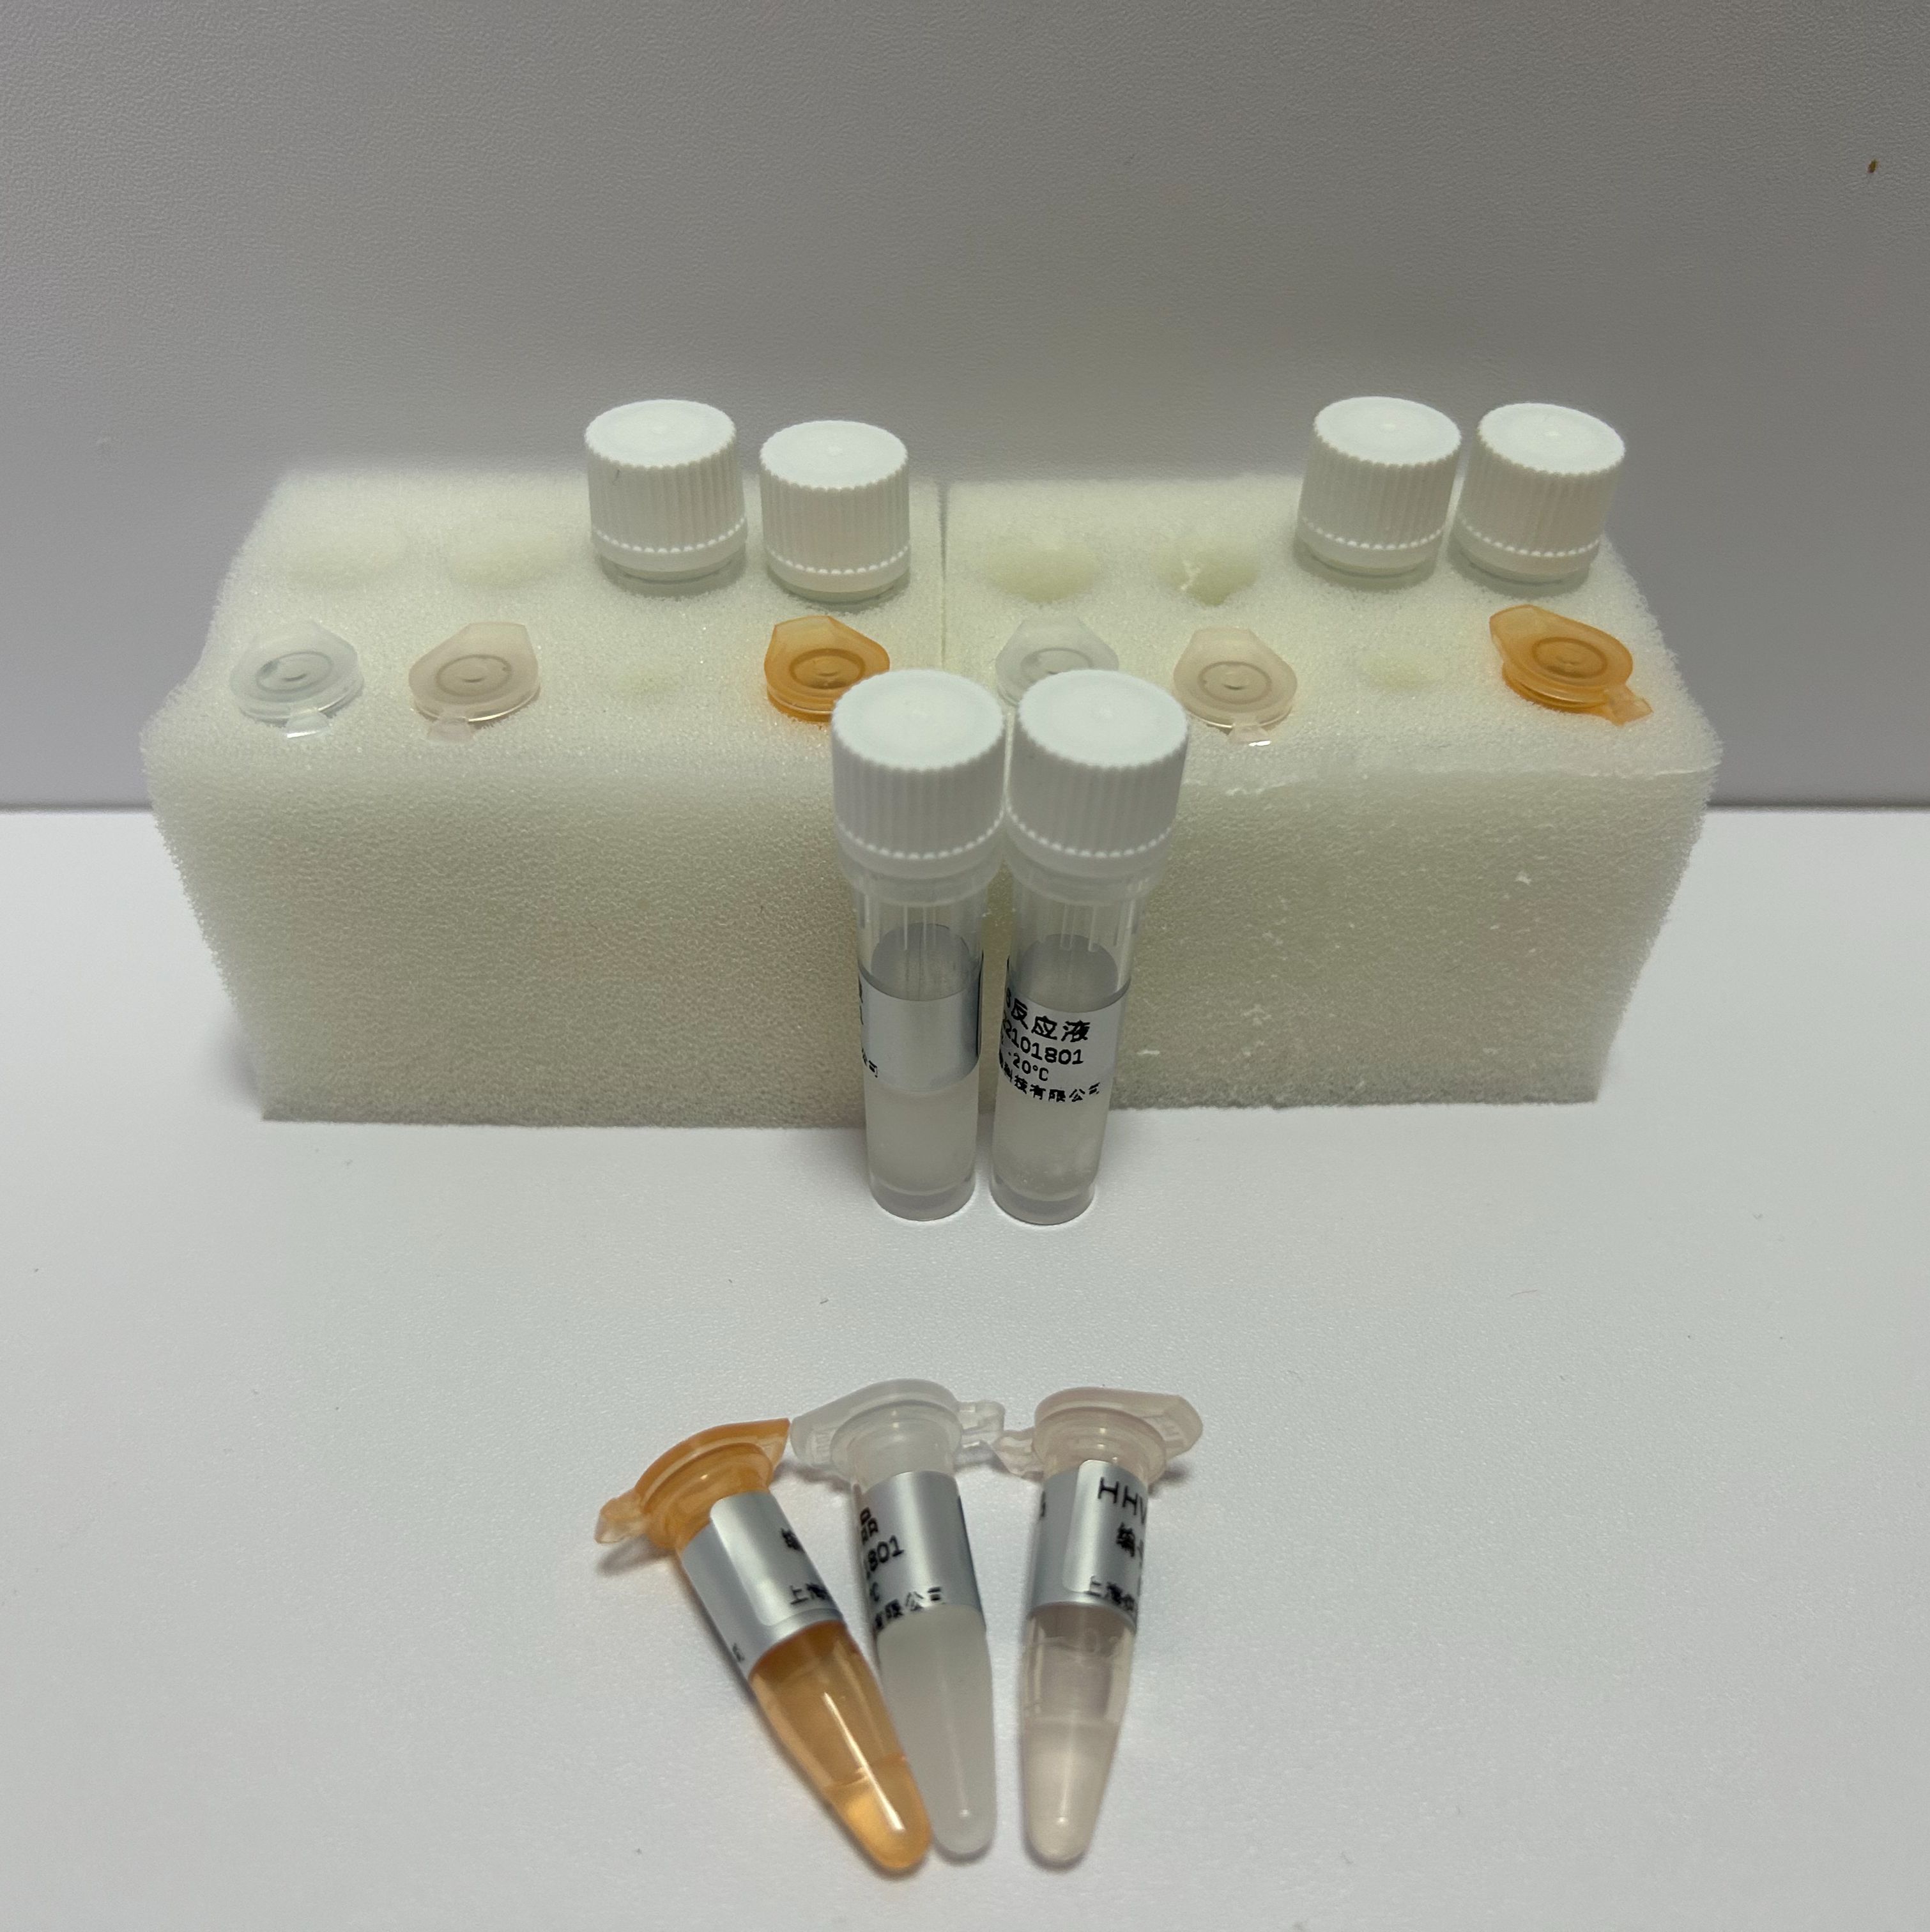 犬血巴尔通体染料法荧光定量PCR试剂盒